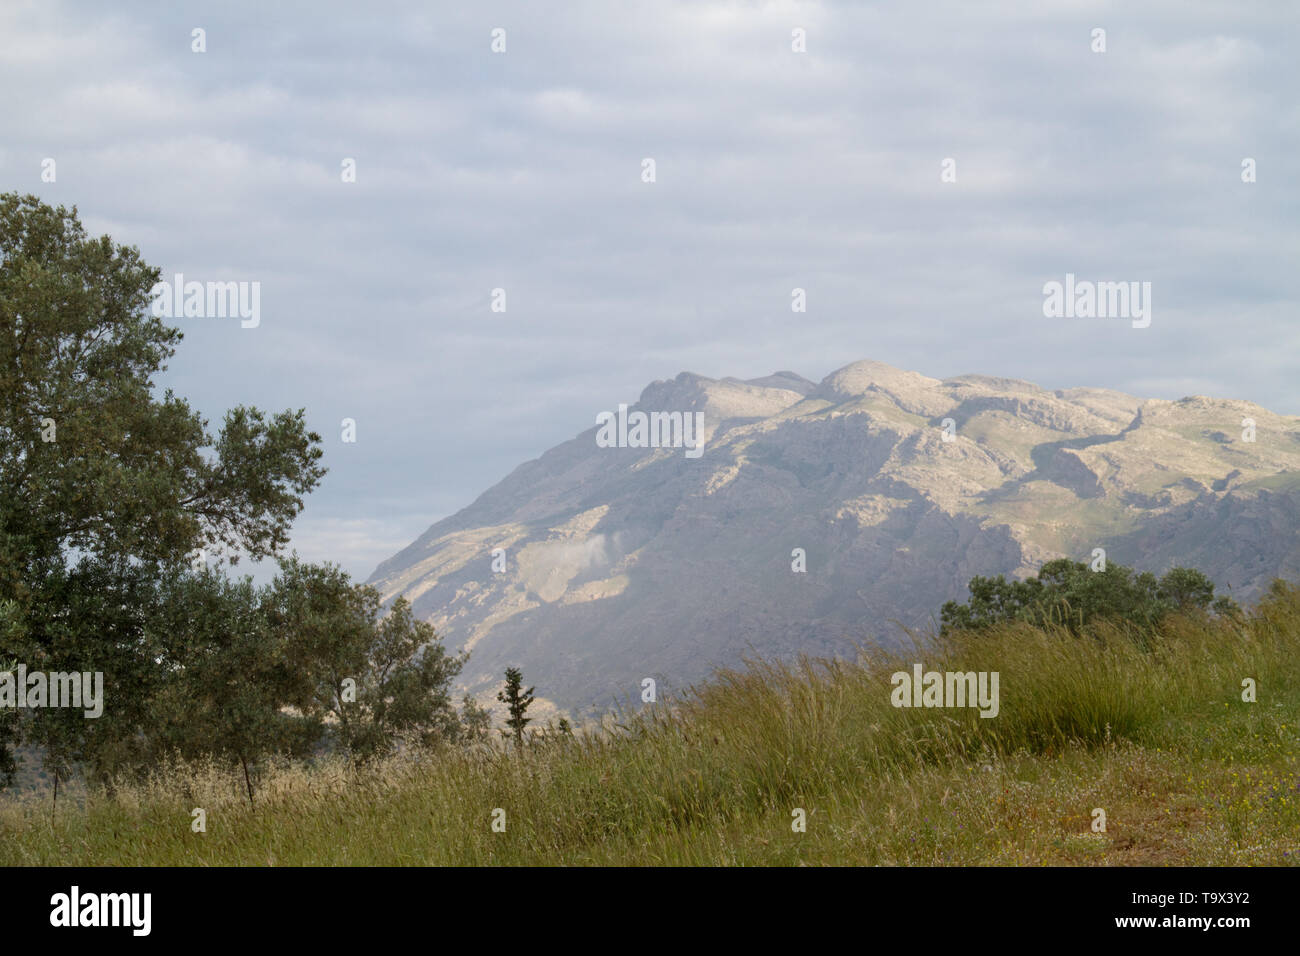 Landschaft auf Kreta, Griechenland. Morgen Licht auf dem Berg Kedros, im Vordergrund eine Wiese Stockfoto